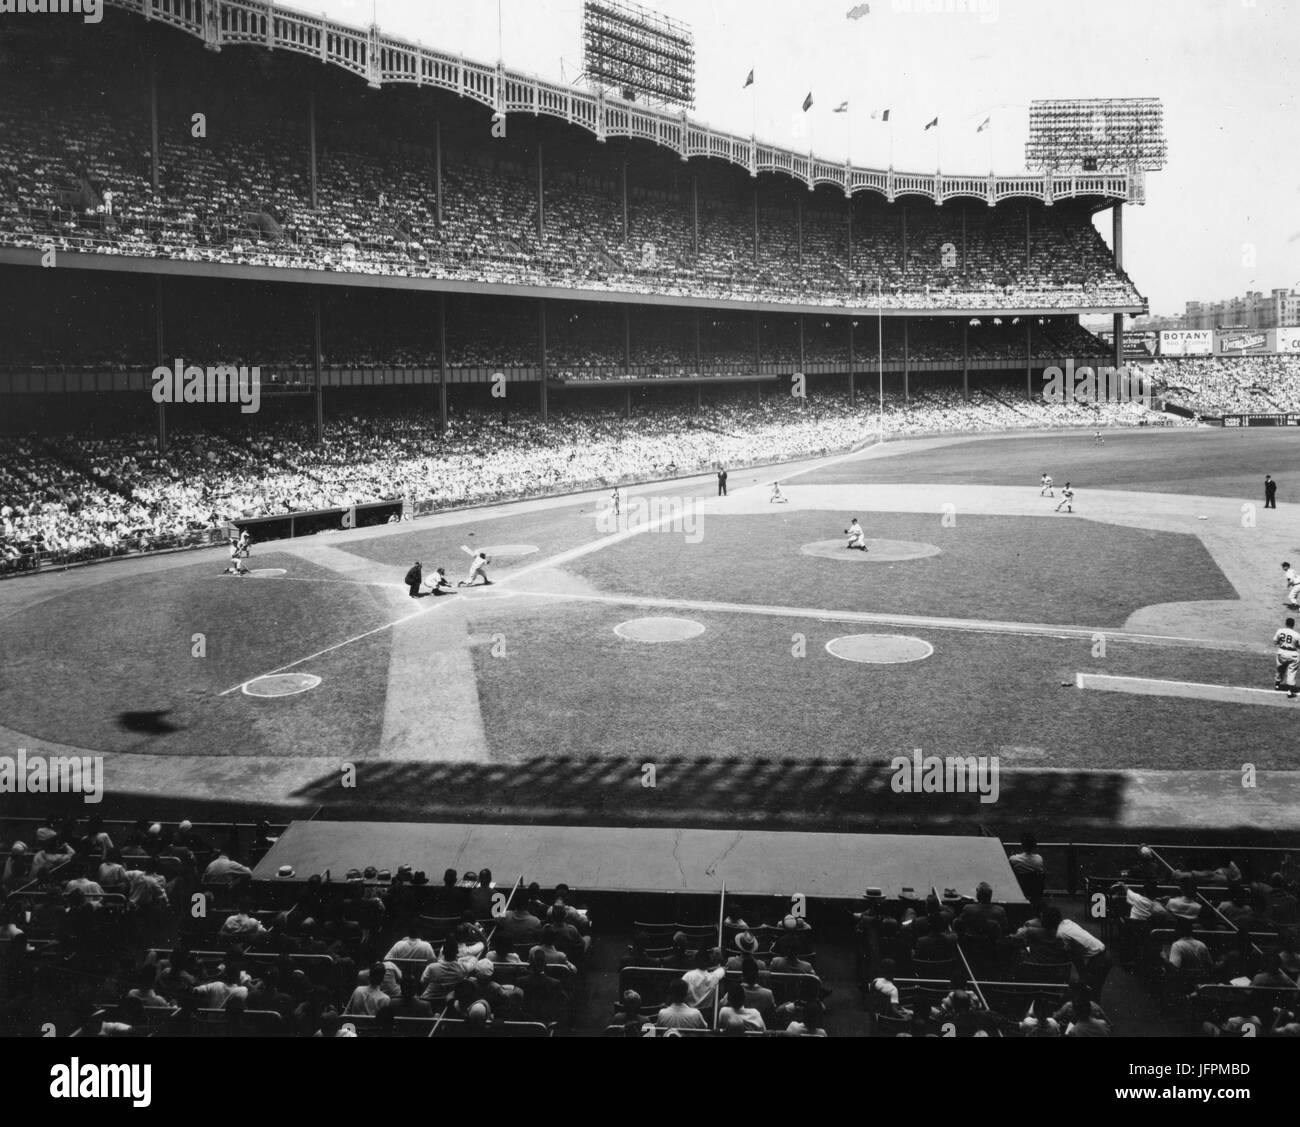 Vue sur le diamant au Yankee Stadium lors d'un match entre les Yankees de New York et les White Sox de Chicago. New York, NY, 1951. Banque D'Images